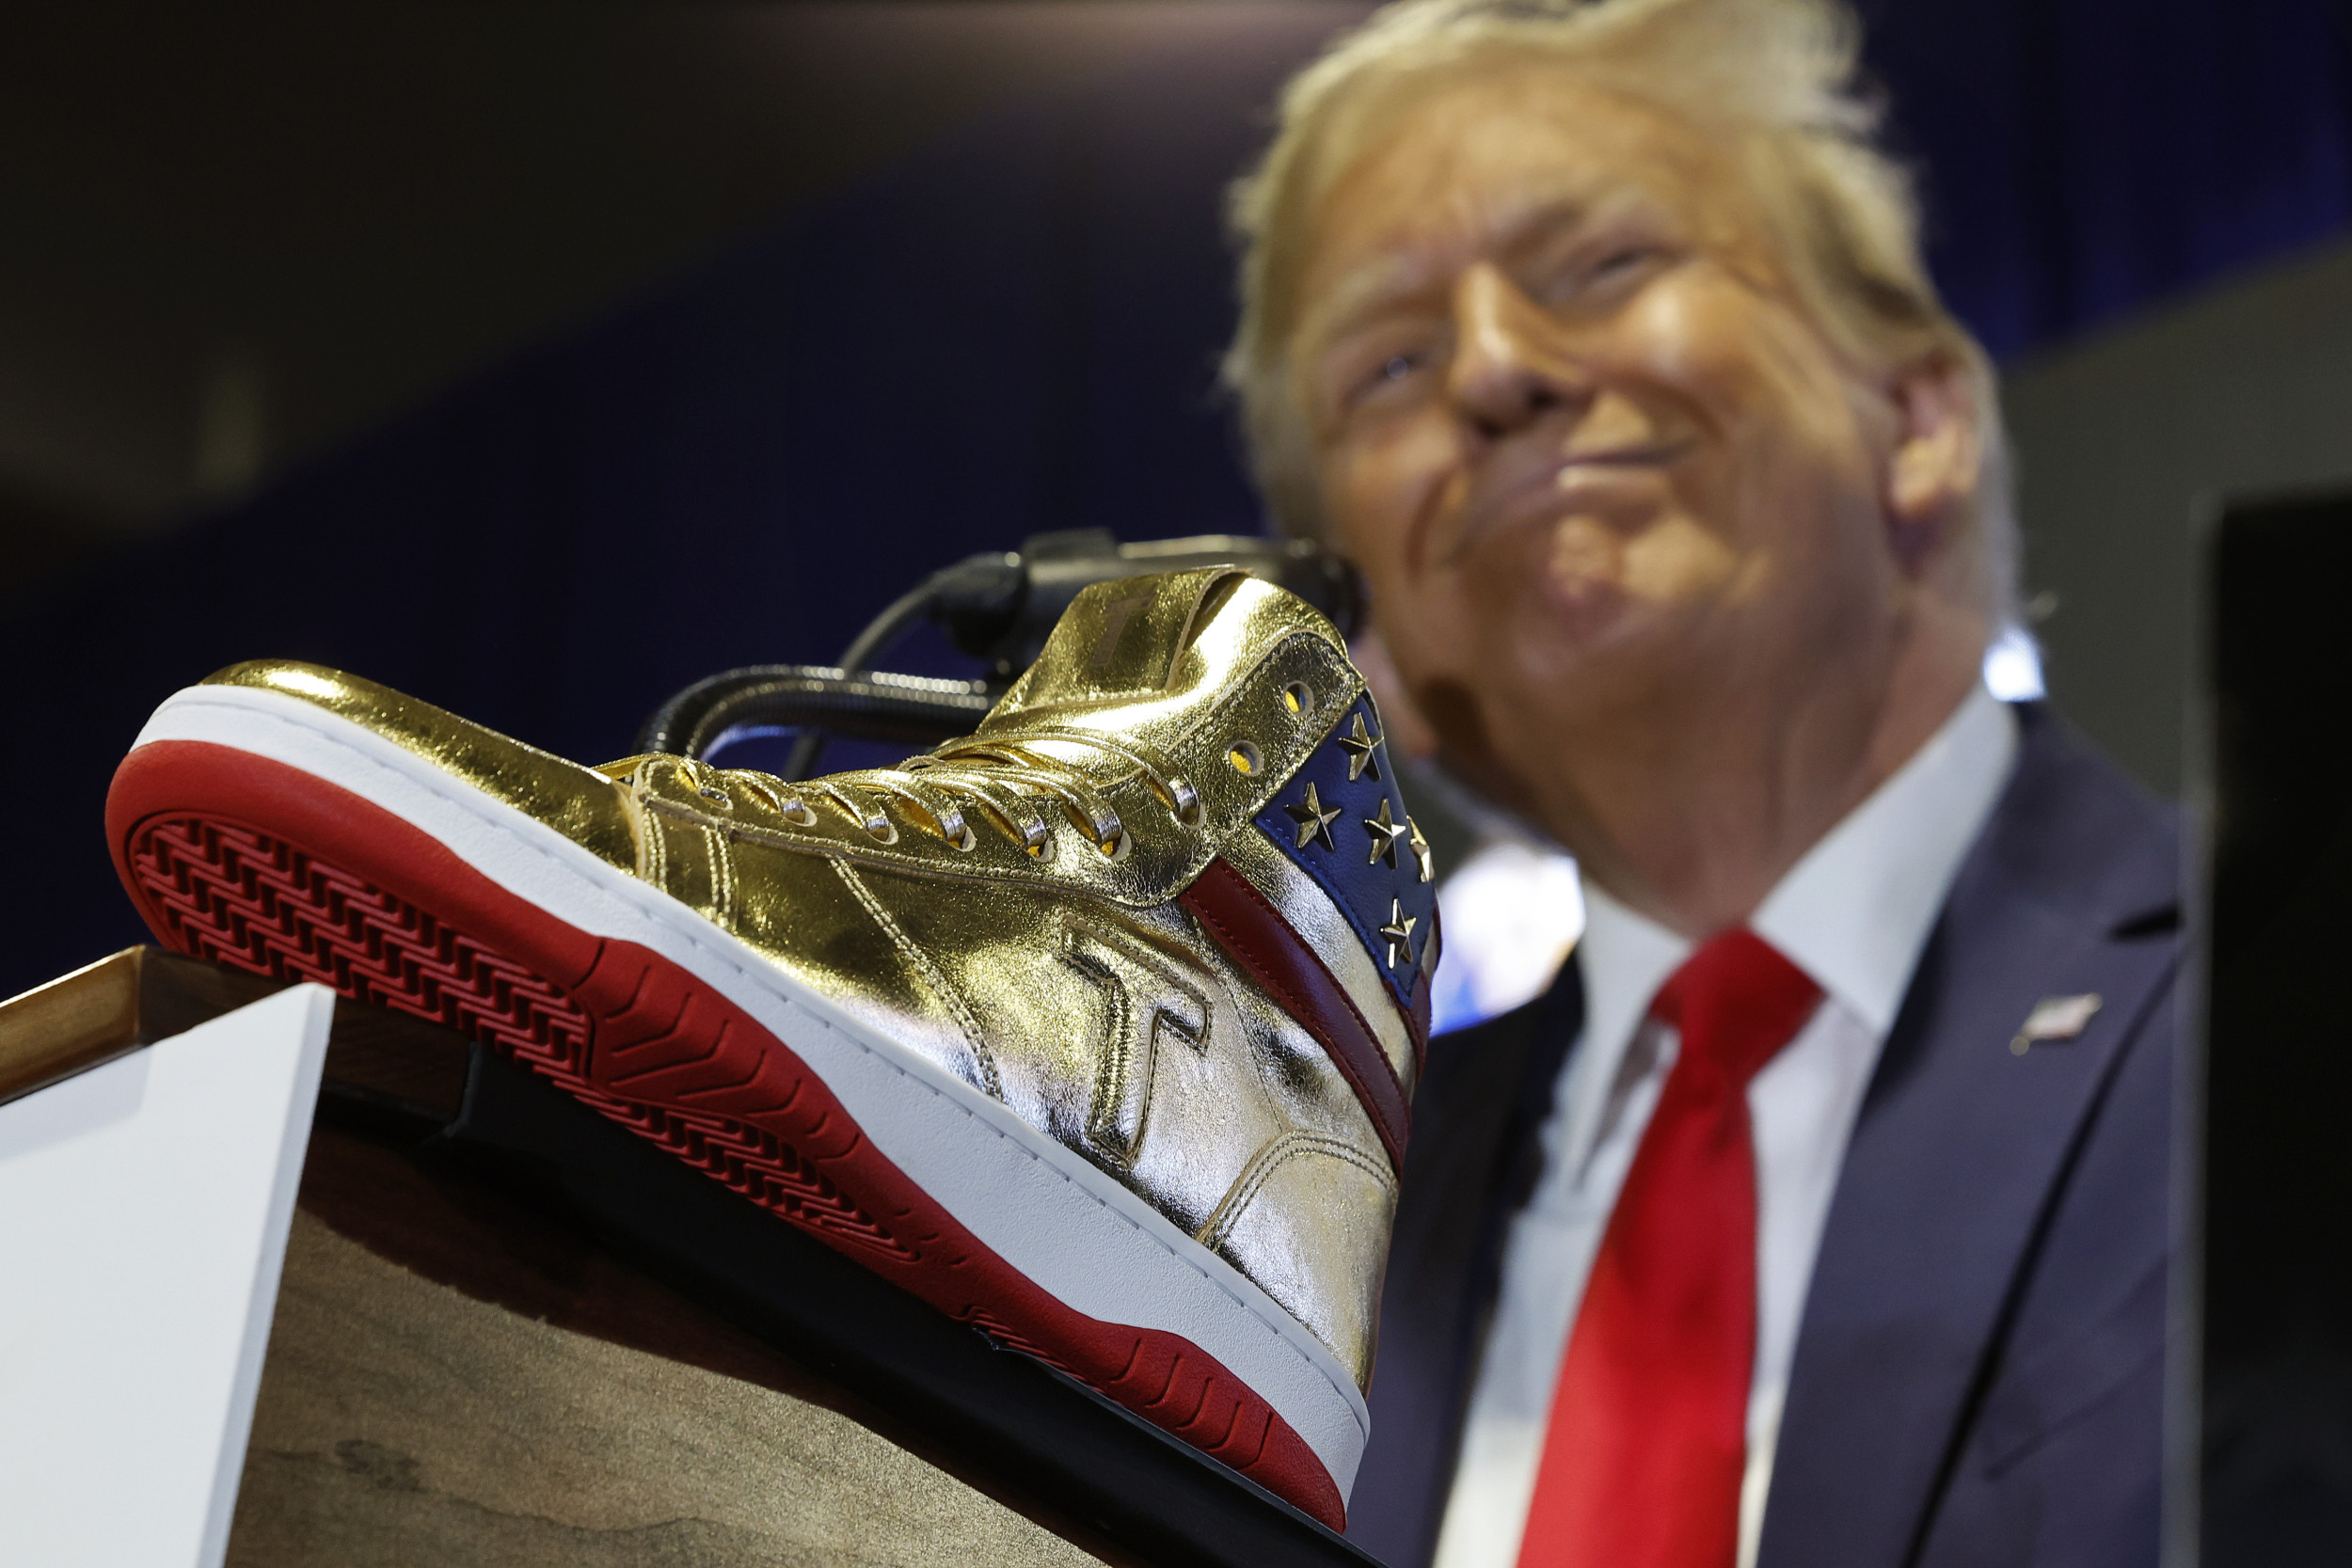 Donald Trump Sneakers Fine Print Raises Questions